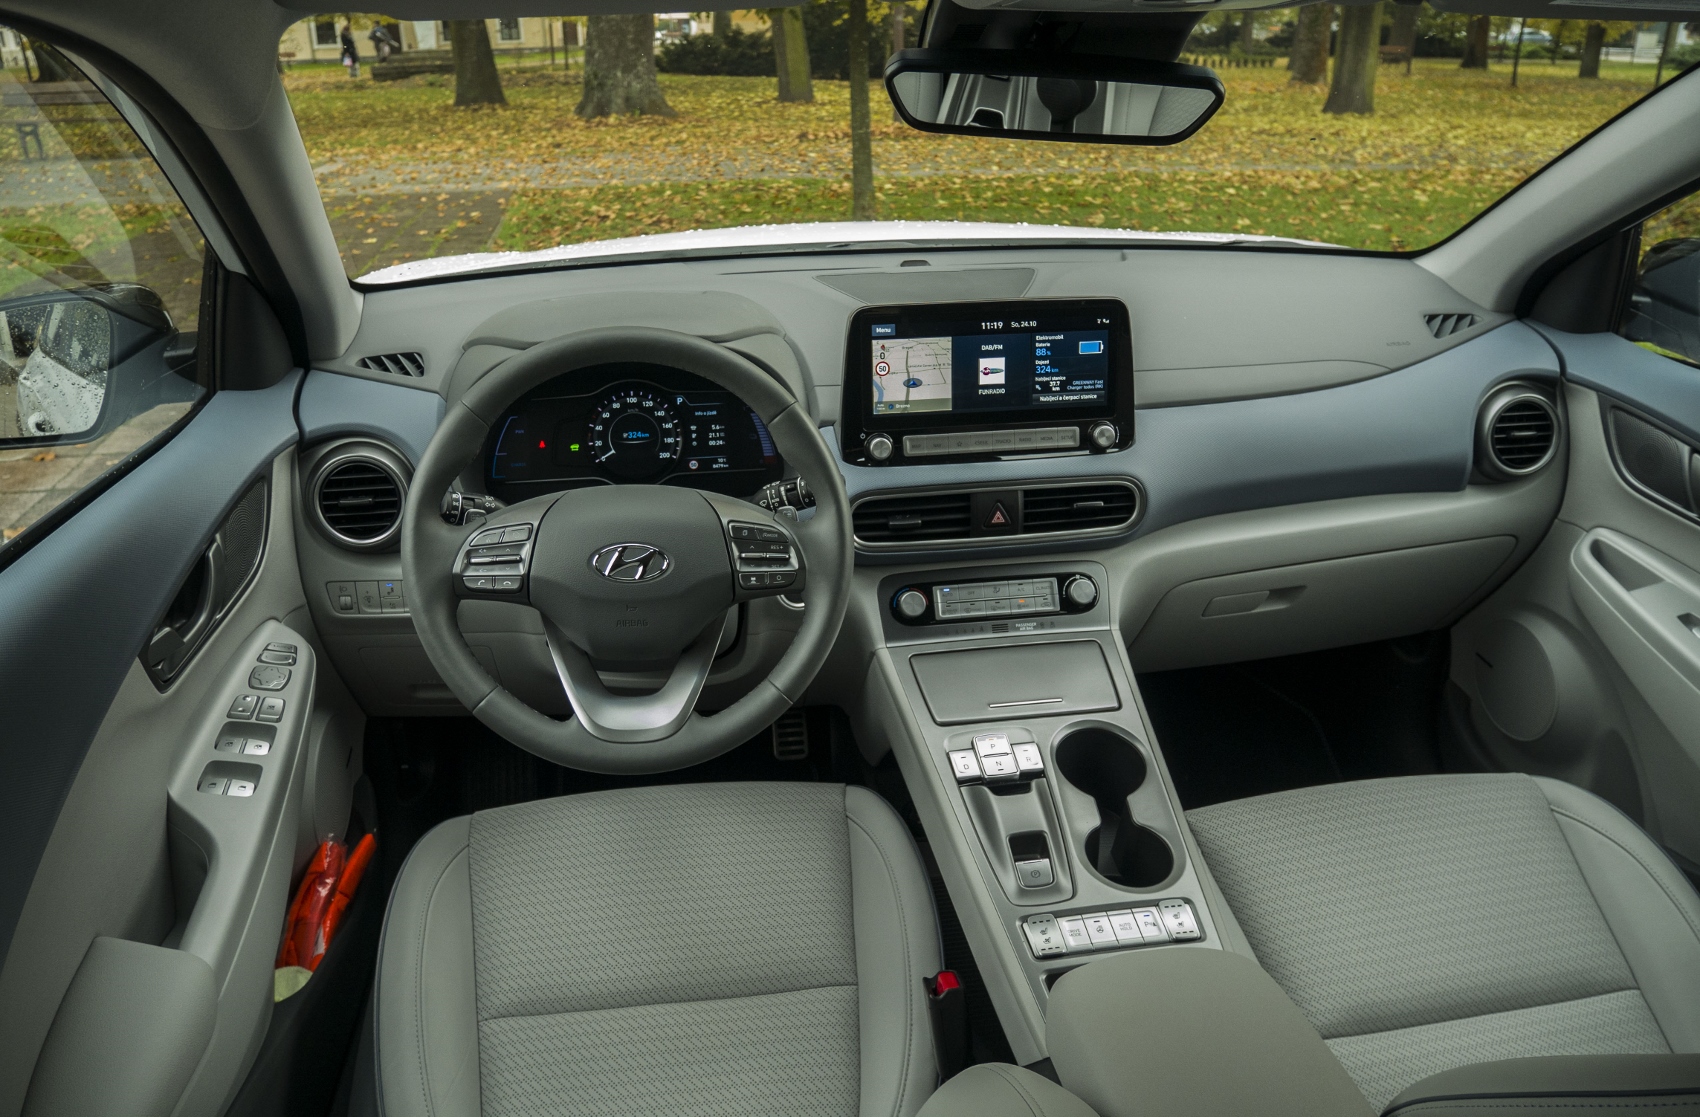 Test: Hyundai Kona Electric má výborný dojazd, spotrebu a jednu chybu 5LEEvdwnQY hyundai-kona-electr